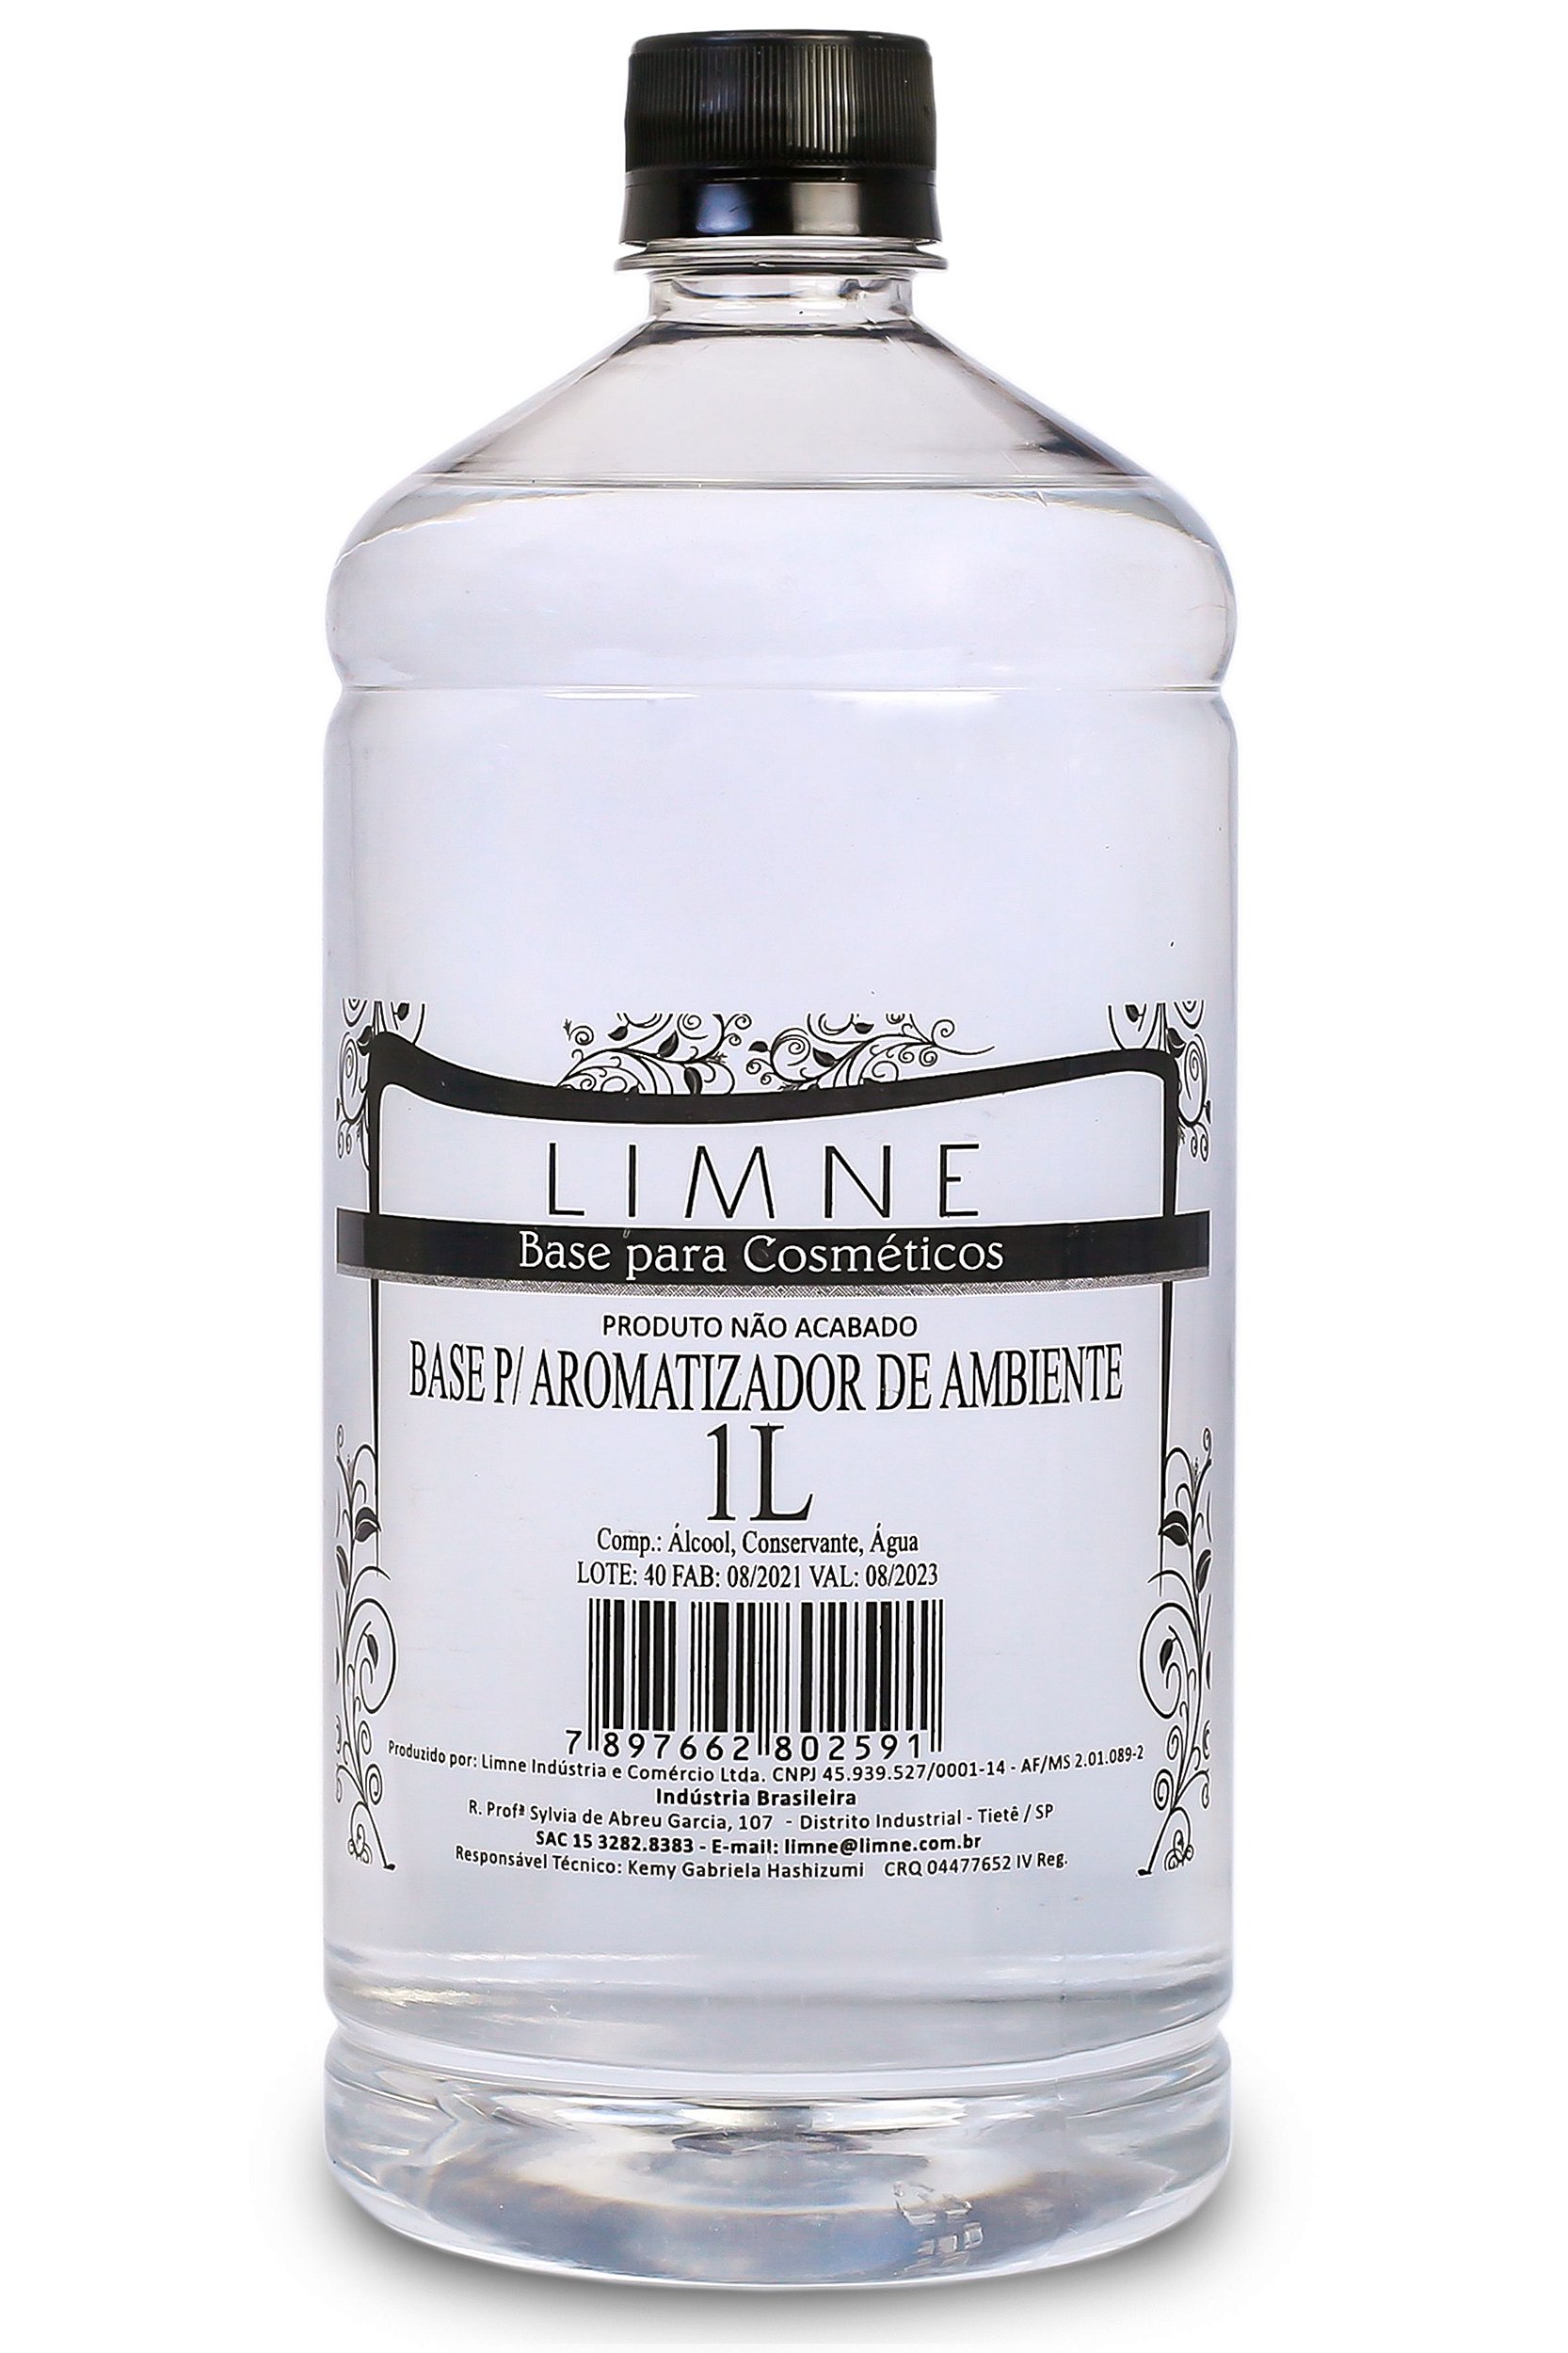 BASE AROMATIZADOR DE AMBIENTE 1 L - Limne Cosméticos